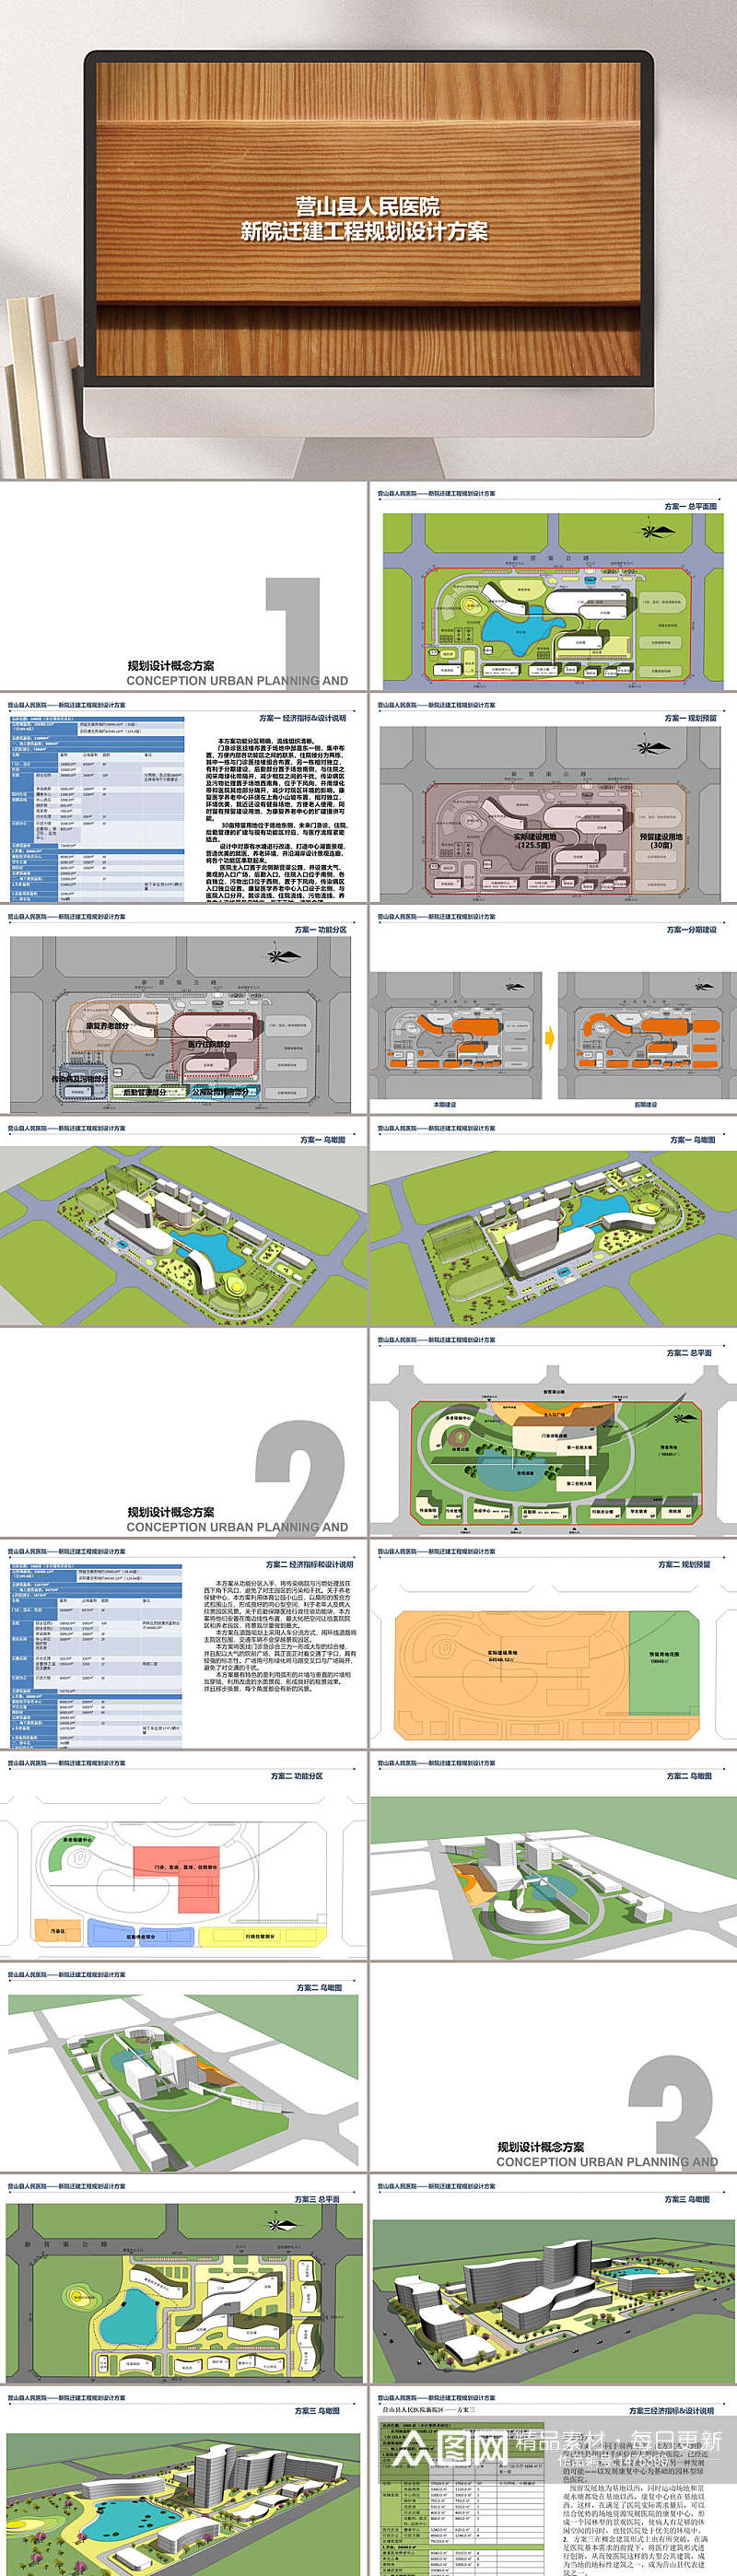 全新建筑设计模板营山县人民医院PPT模板素材